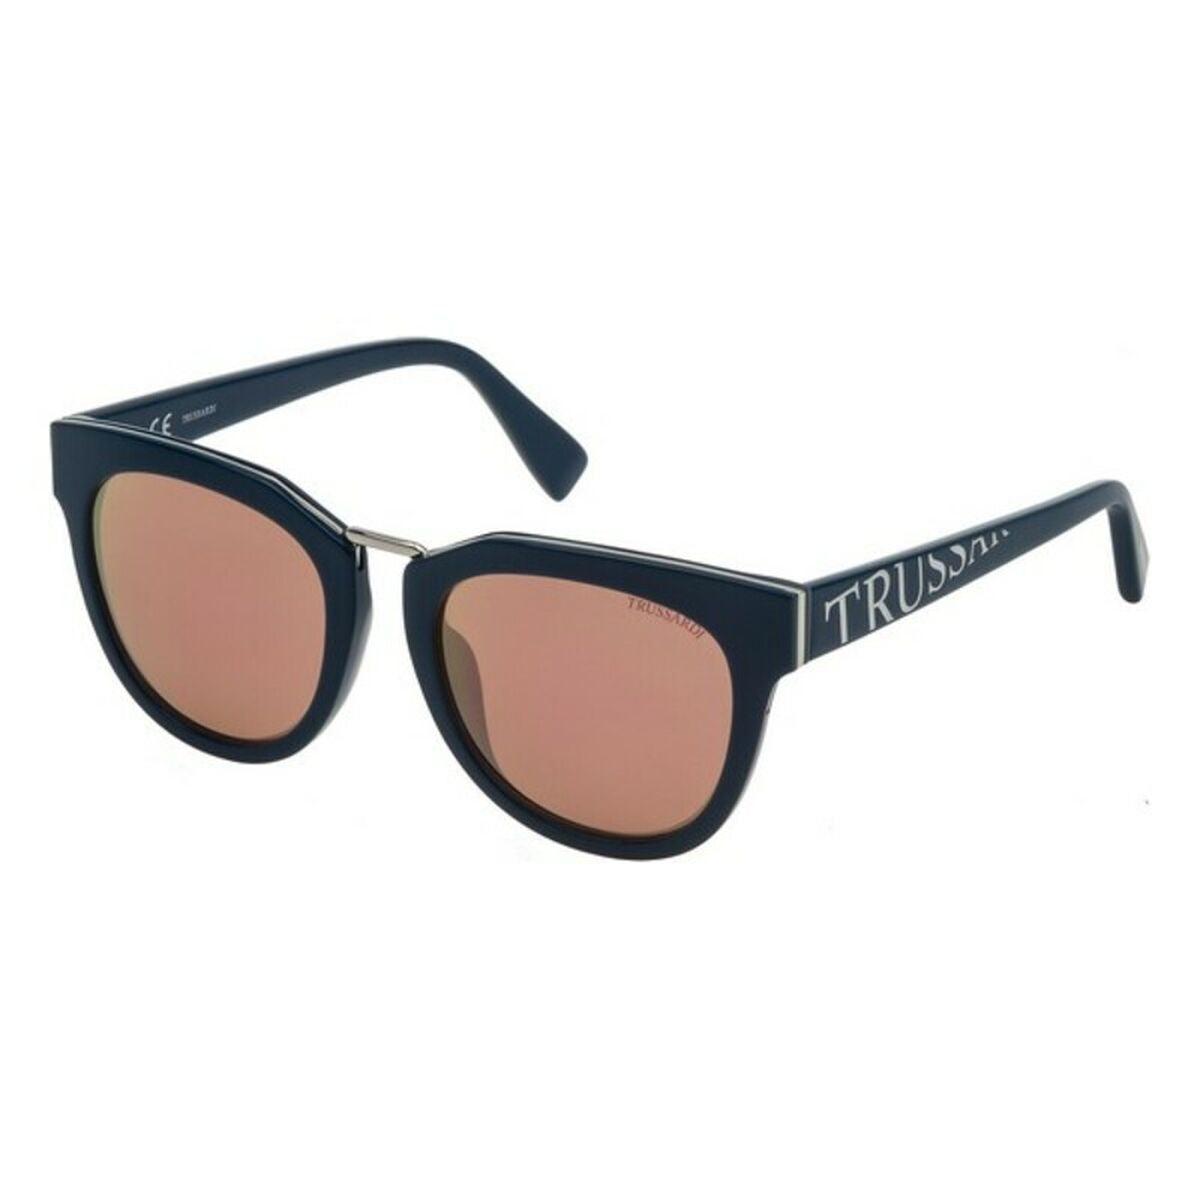 Ladies'Sunglasses Trussardi